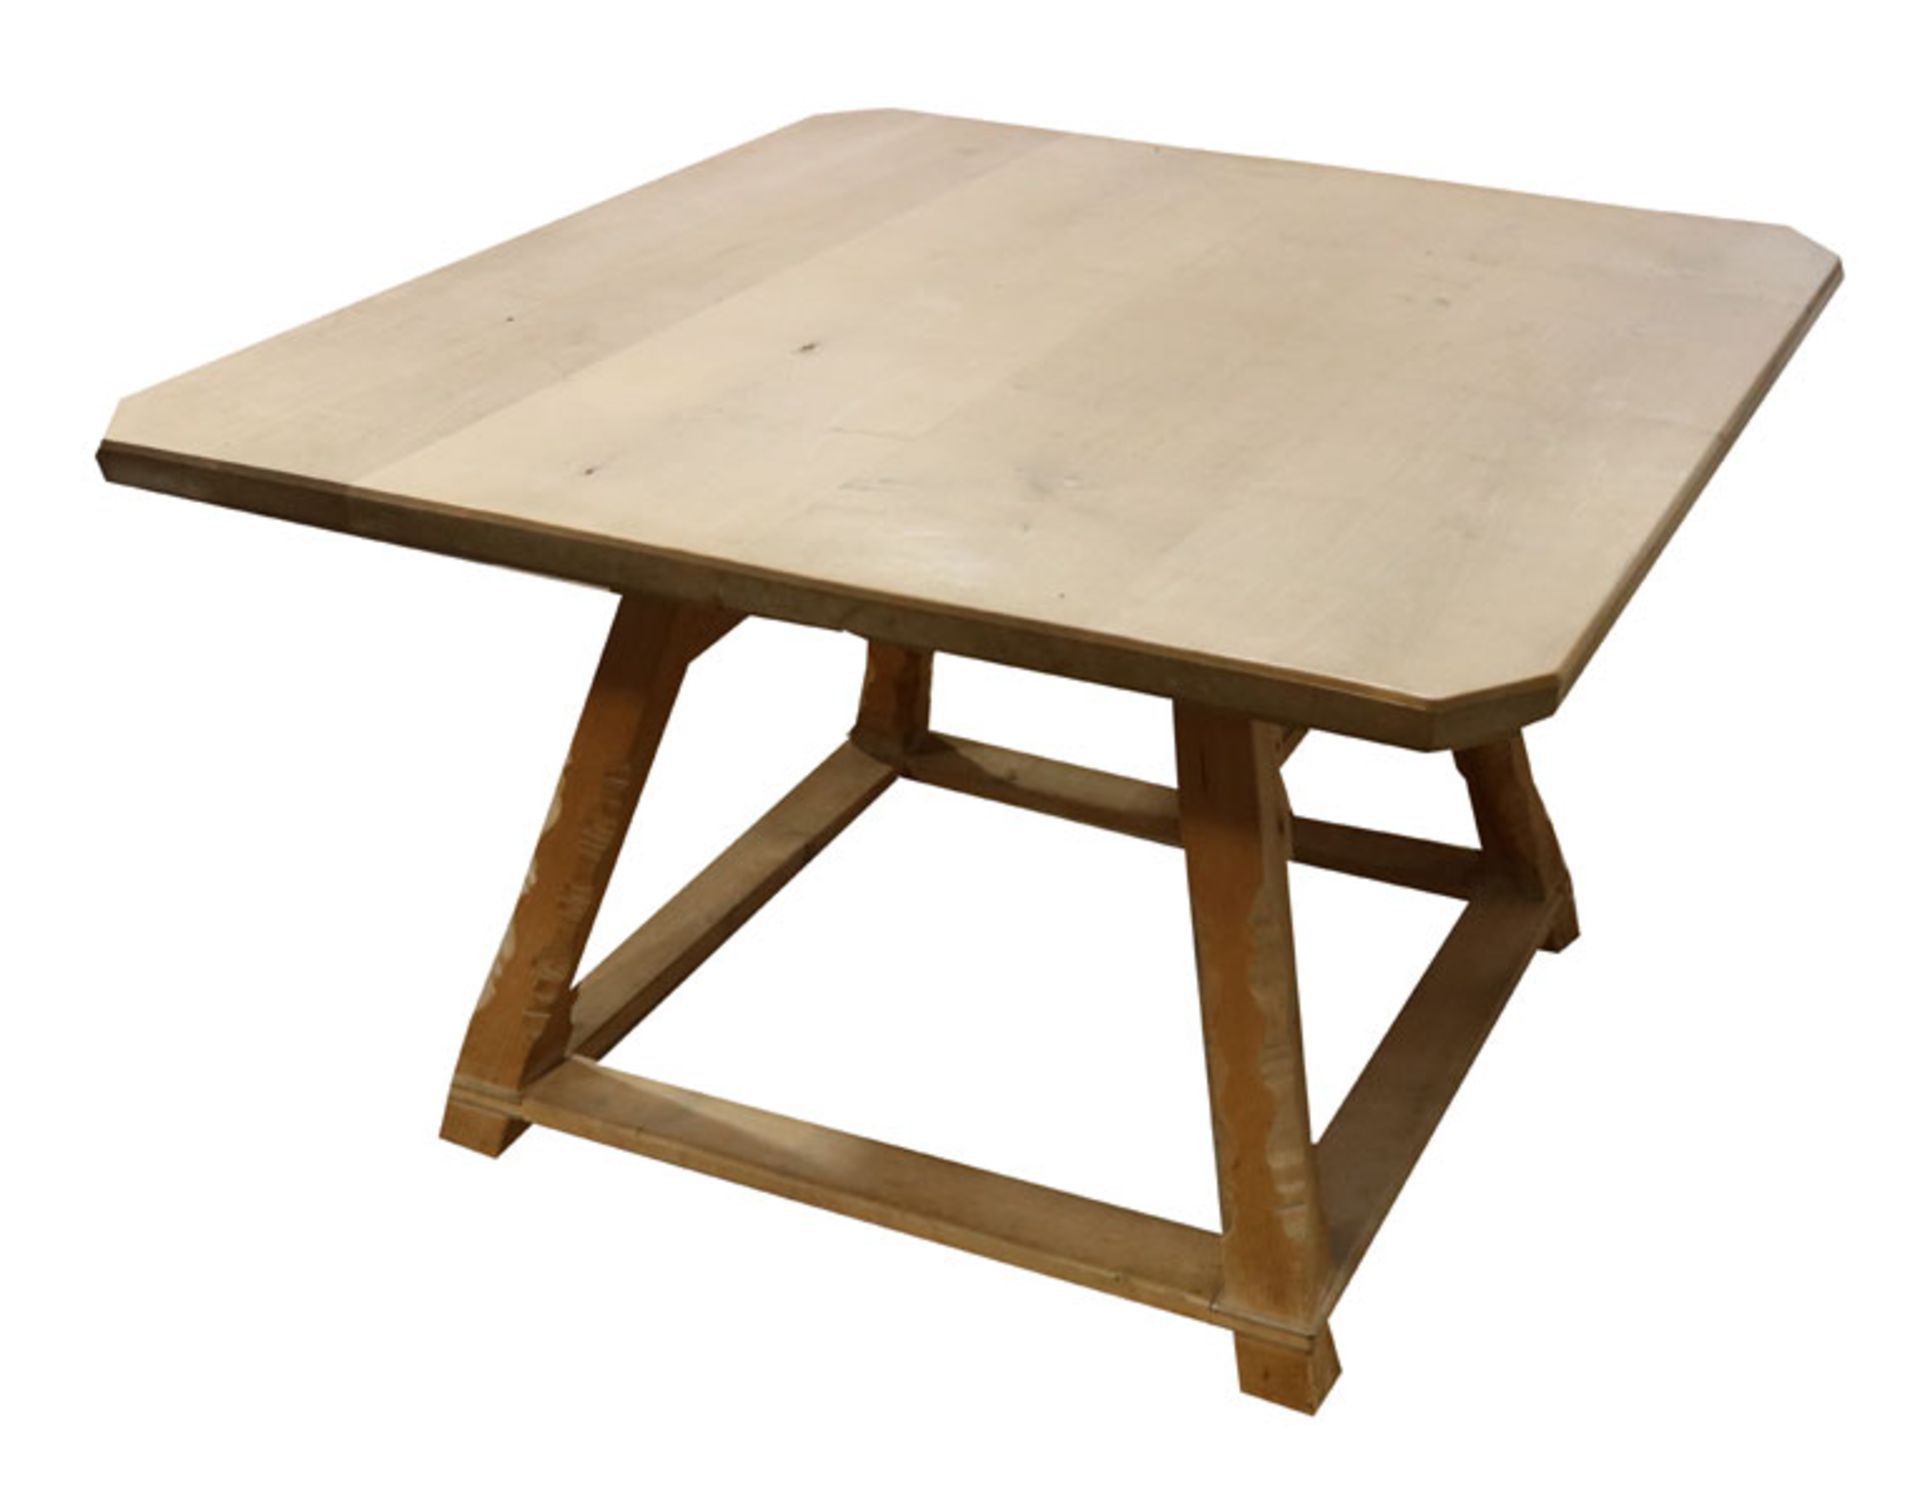 Jokkeltisch, Korpus mit einer Schublade, Gebrauchsspuren, H 75 cm, B 116 cm, T 125 cm